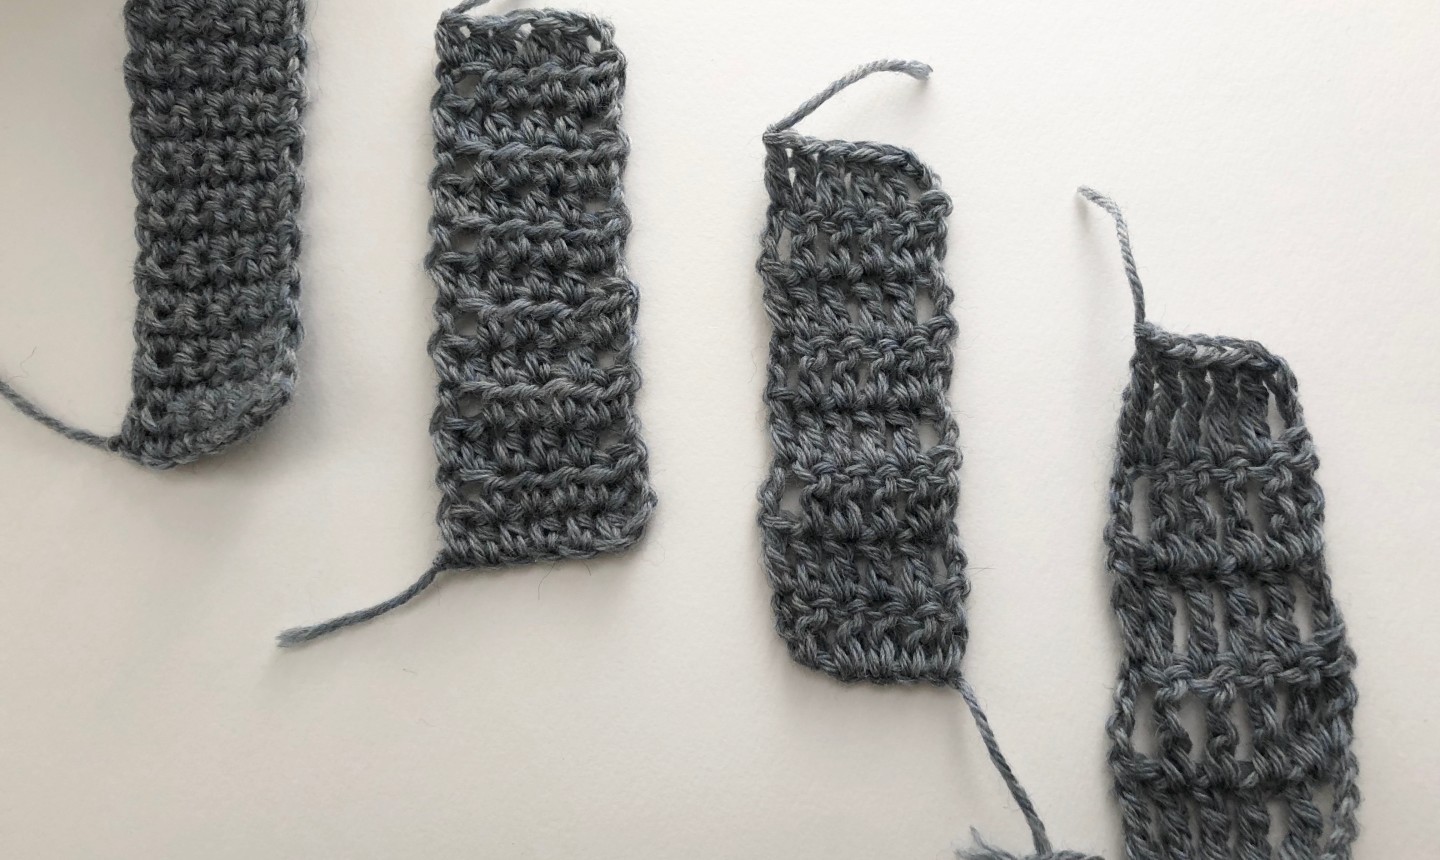 Four different crochet pieces